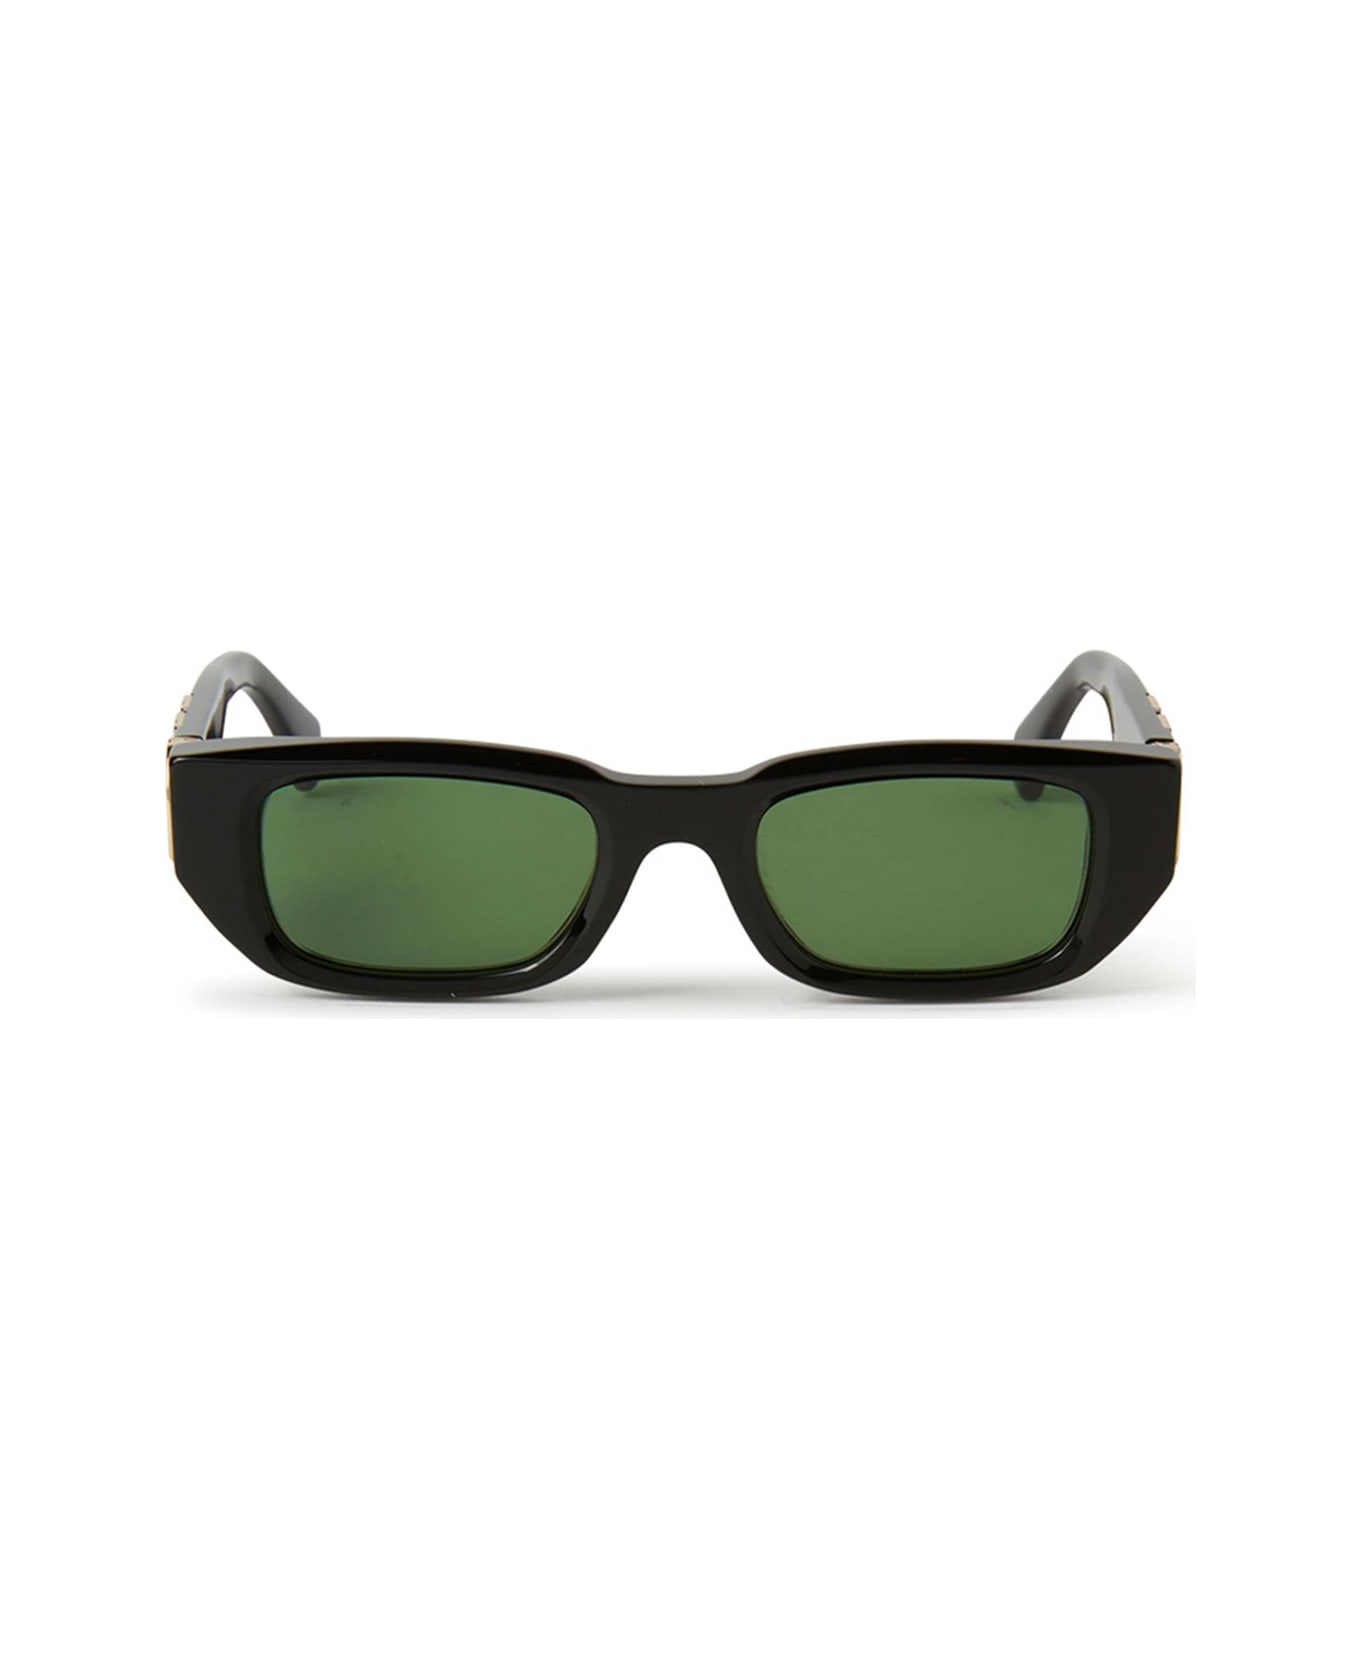 Off-White Oeri124 Fillmore 1055 Black Green Sunglasses - Nero